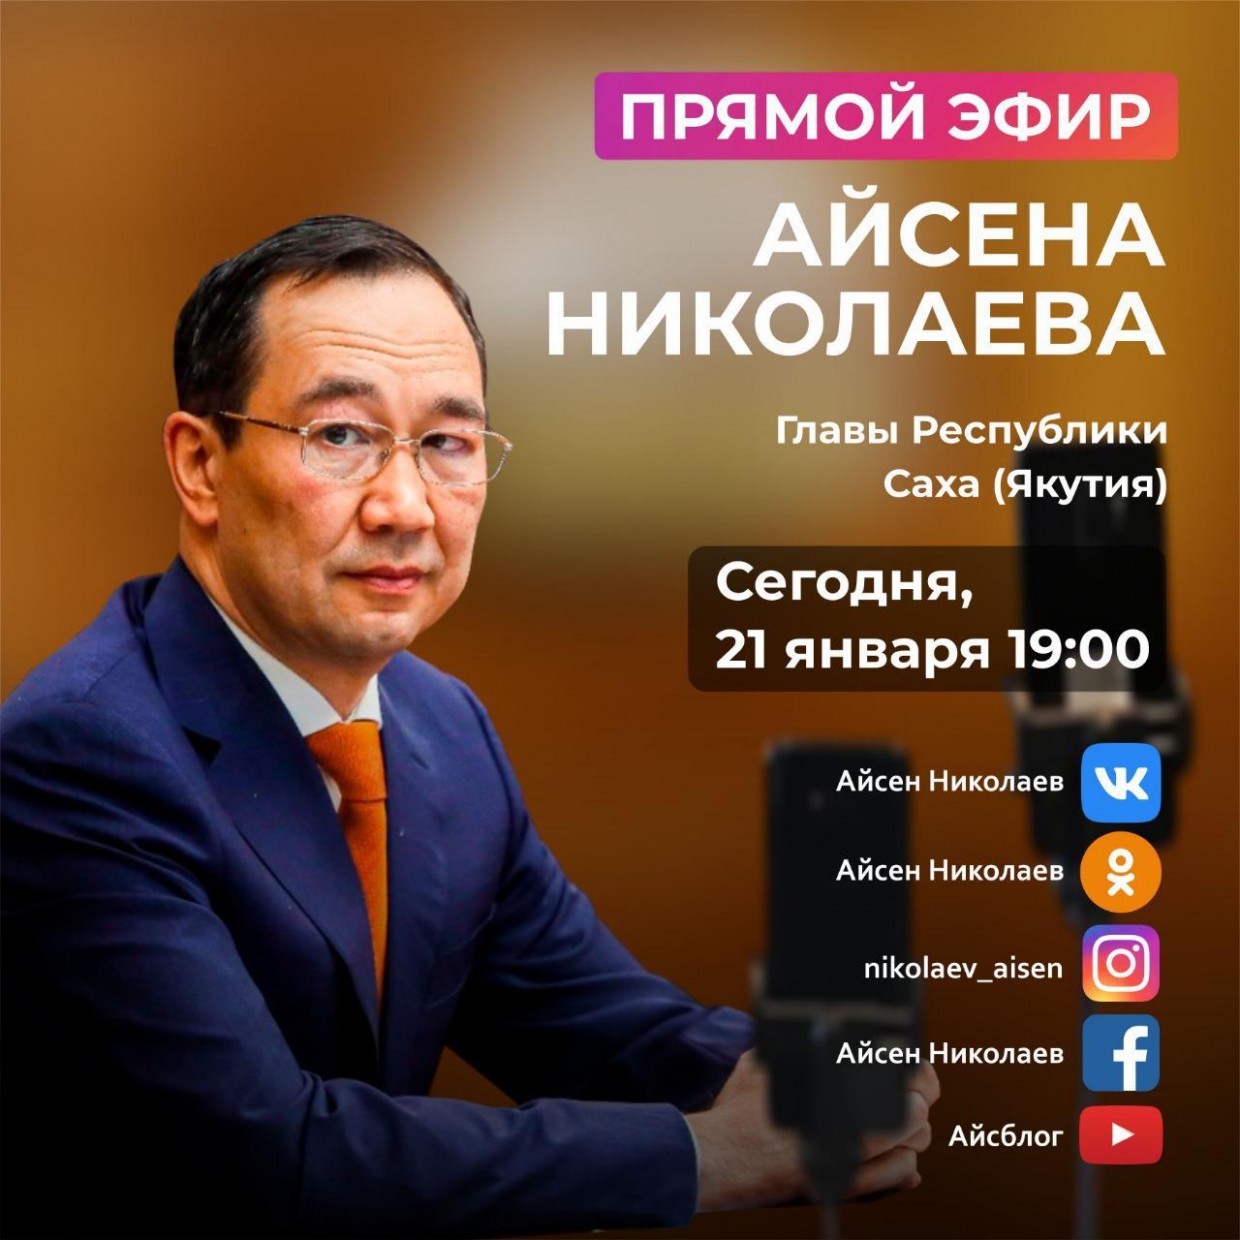 Сегодня Глава Якутии ответит на вопросы жителей республики в прямом эфире в соцсетях